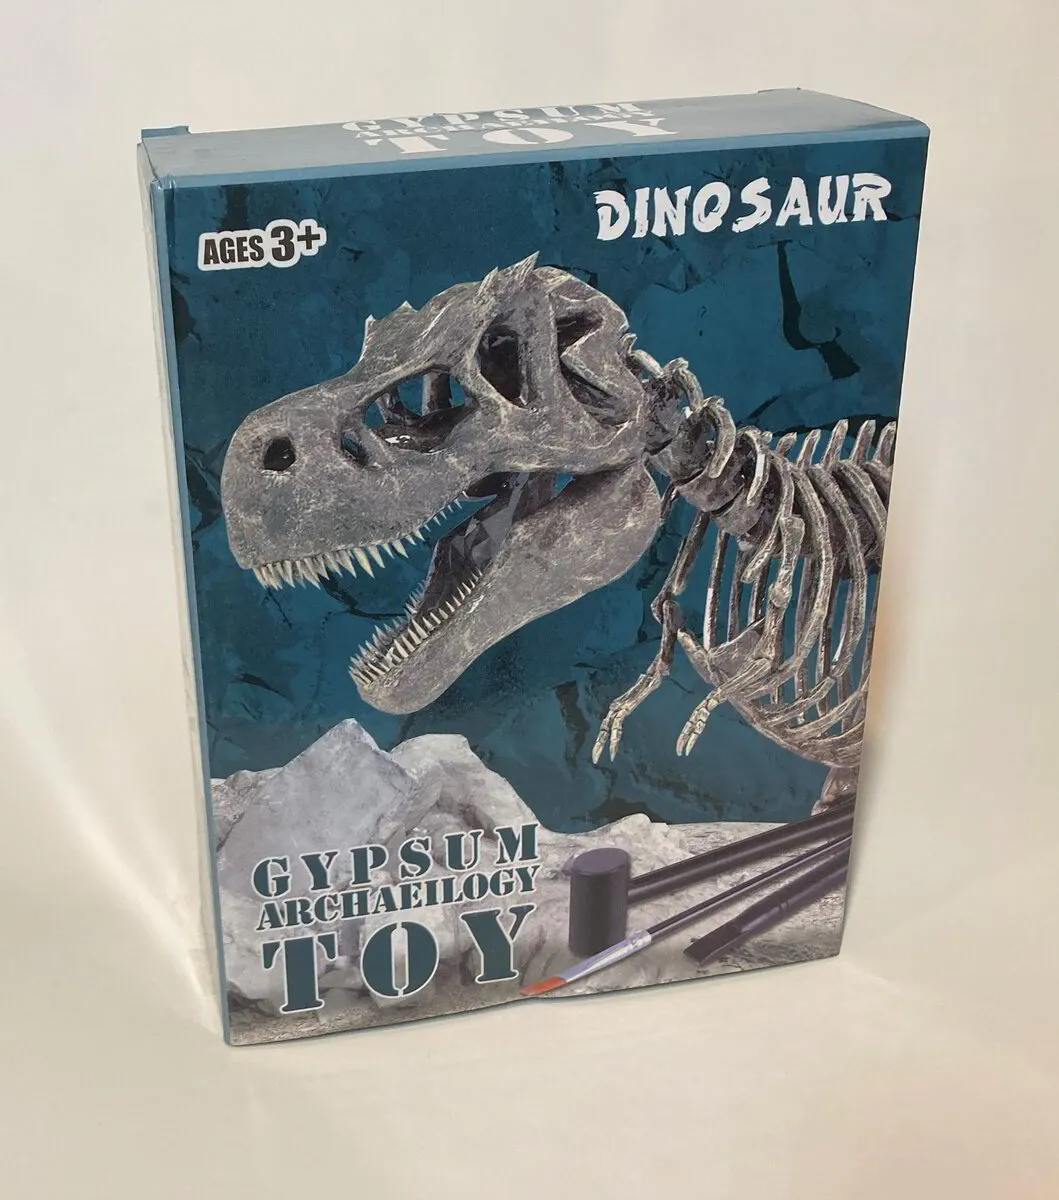 Dinosaur Excavation Kit